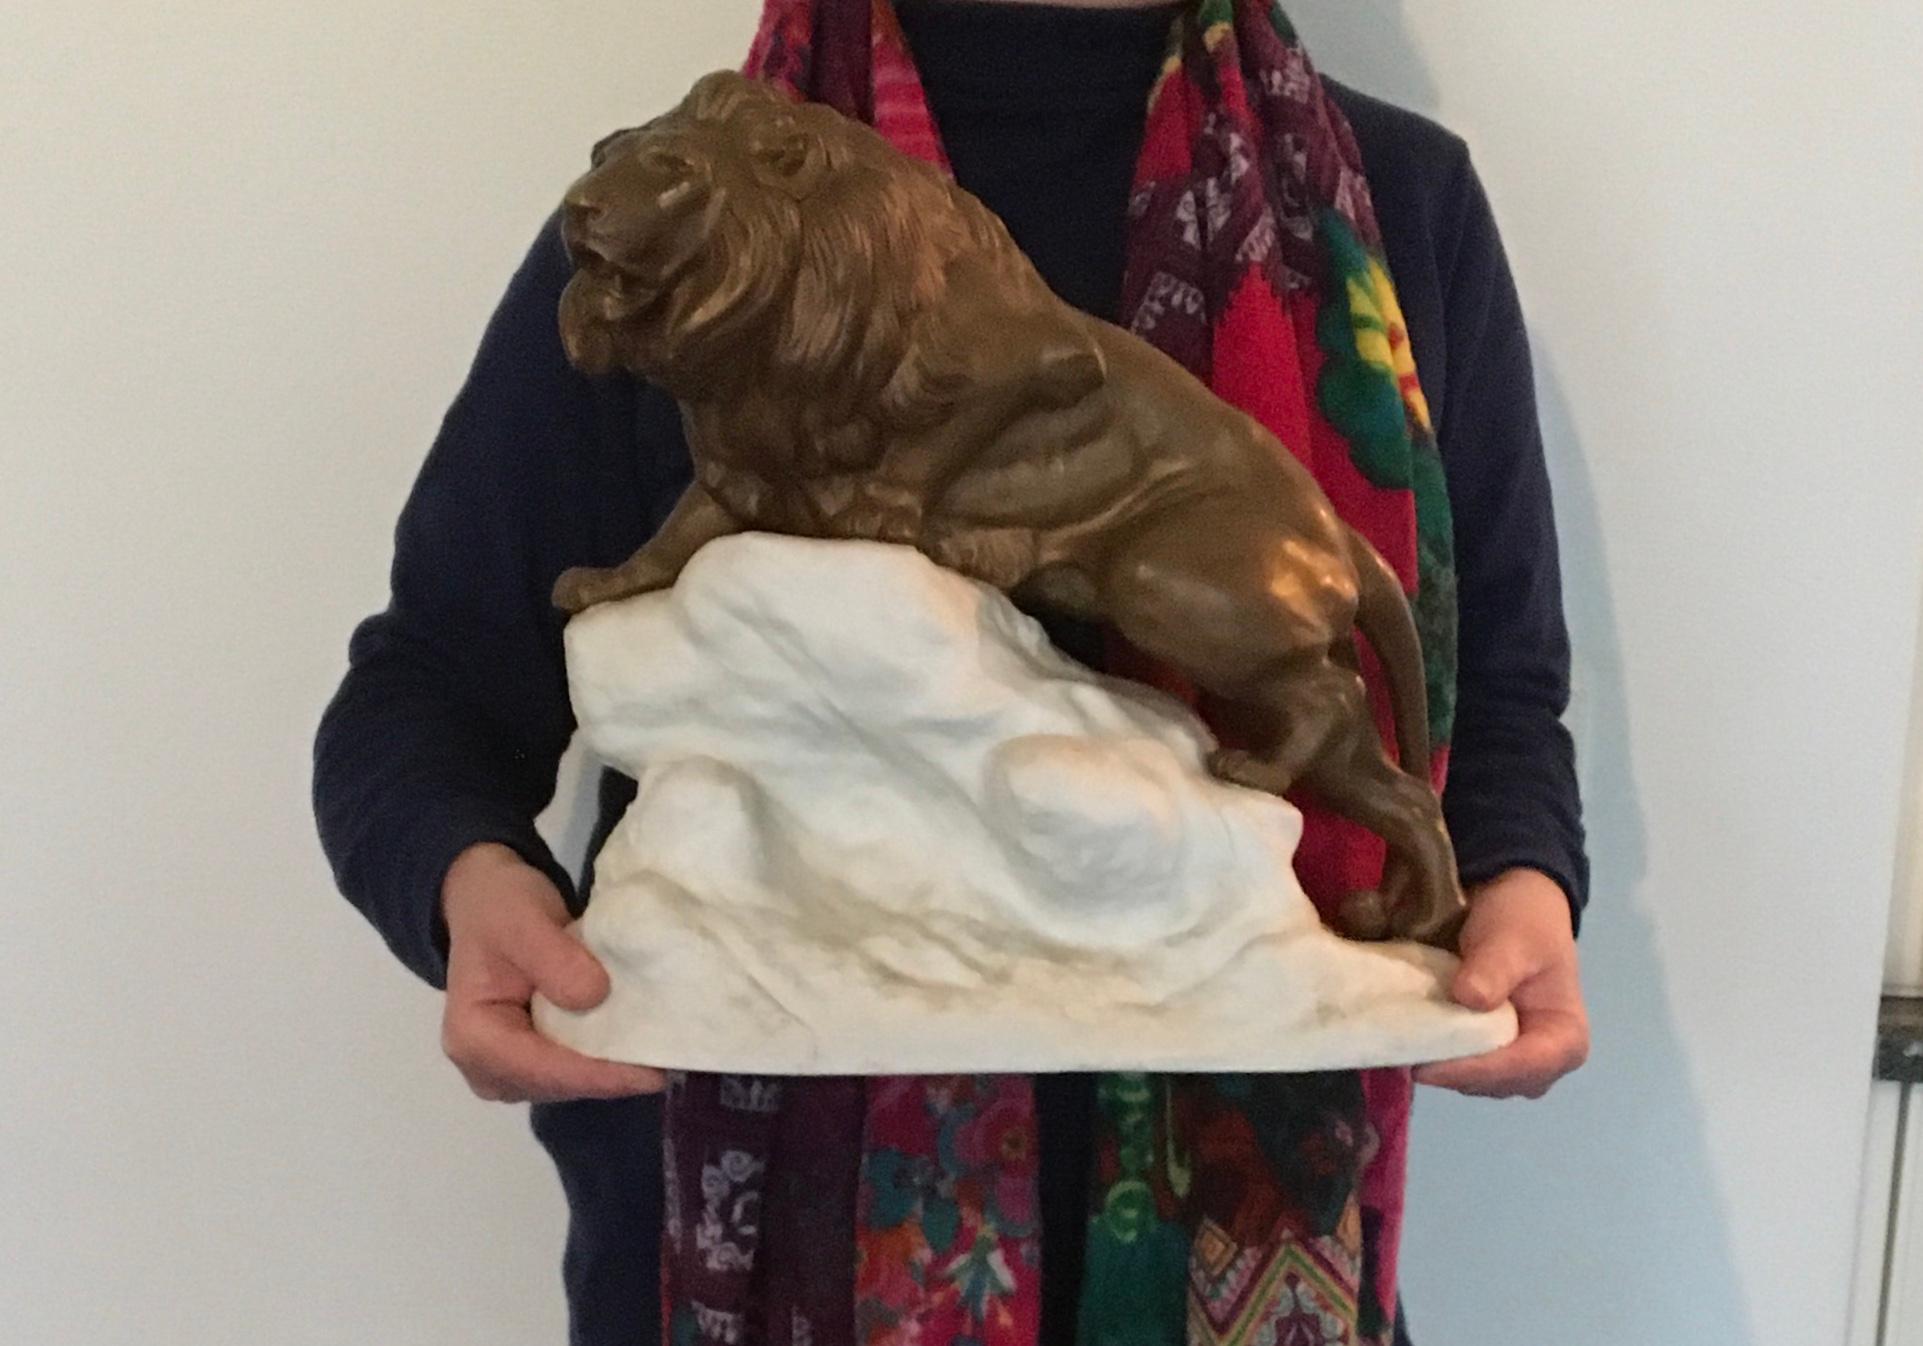 Ein bronzener Löwe auf einem weißen Felsen - auf dem Gipfel der Welt wie der König der Löwen. 
Eine beeindruckende Tierskulptur von Clovis Edmond Masson, einem französischen Künstler, der für seine Tierskulpturen bekannt war ( 1838 - 1913 ) 
Sehr